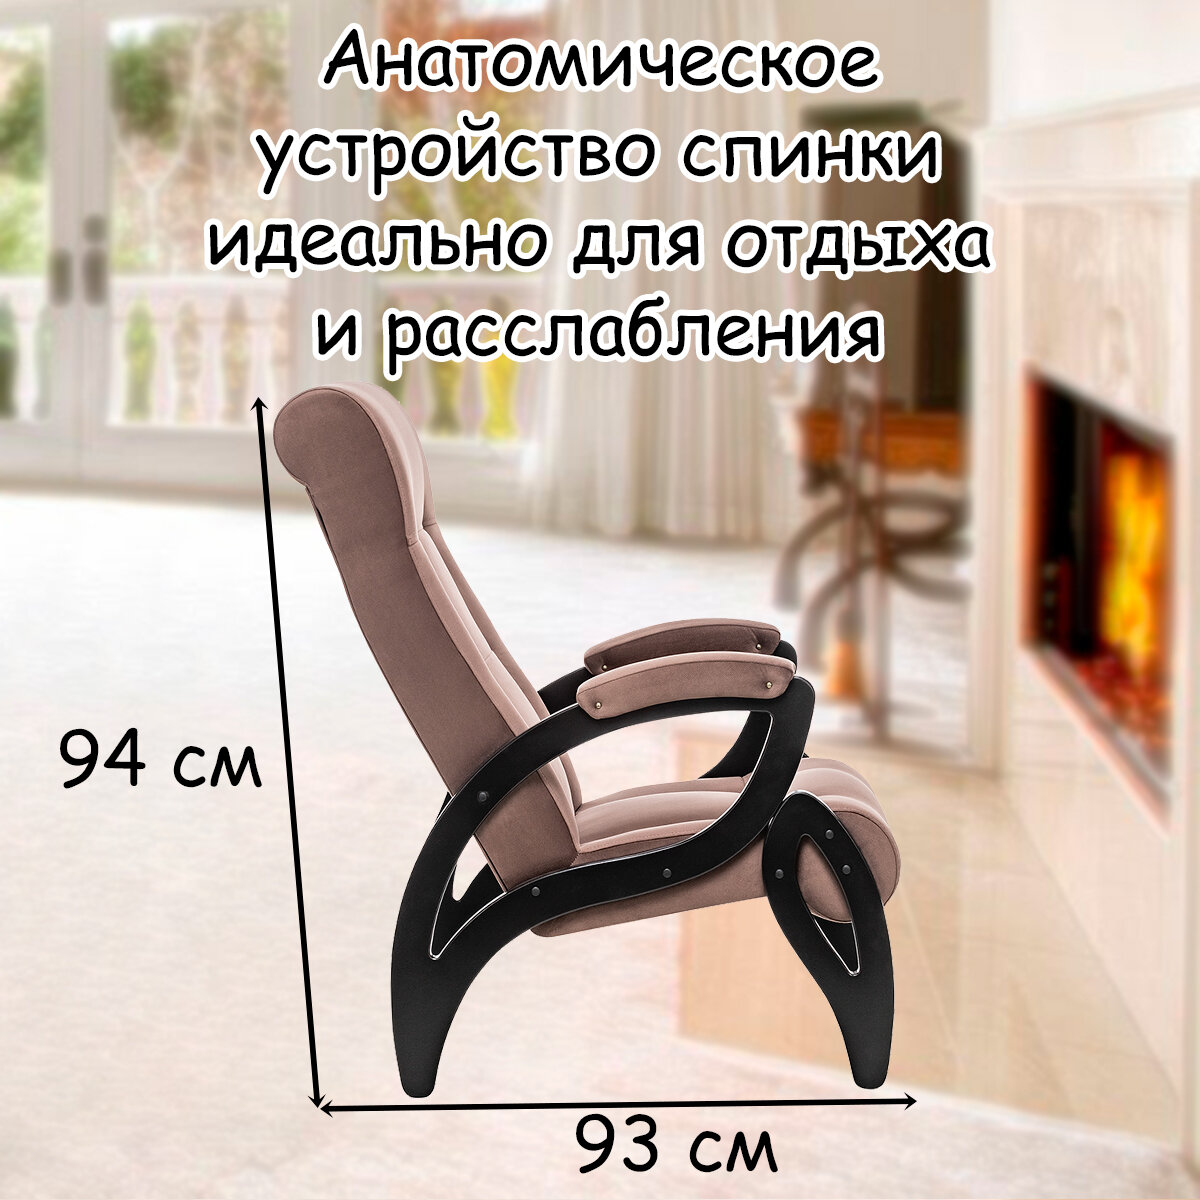 Кресло для взрослых 58.5х87х99 см, модель 51, maxx, цвет: Maxx 235 (коричневый), каркас: Venge (черный) - фотография № 4